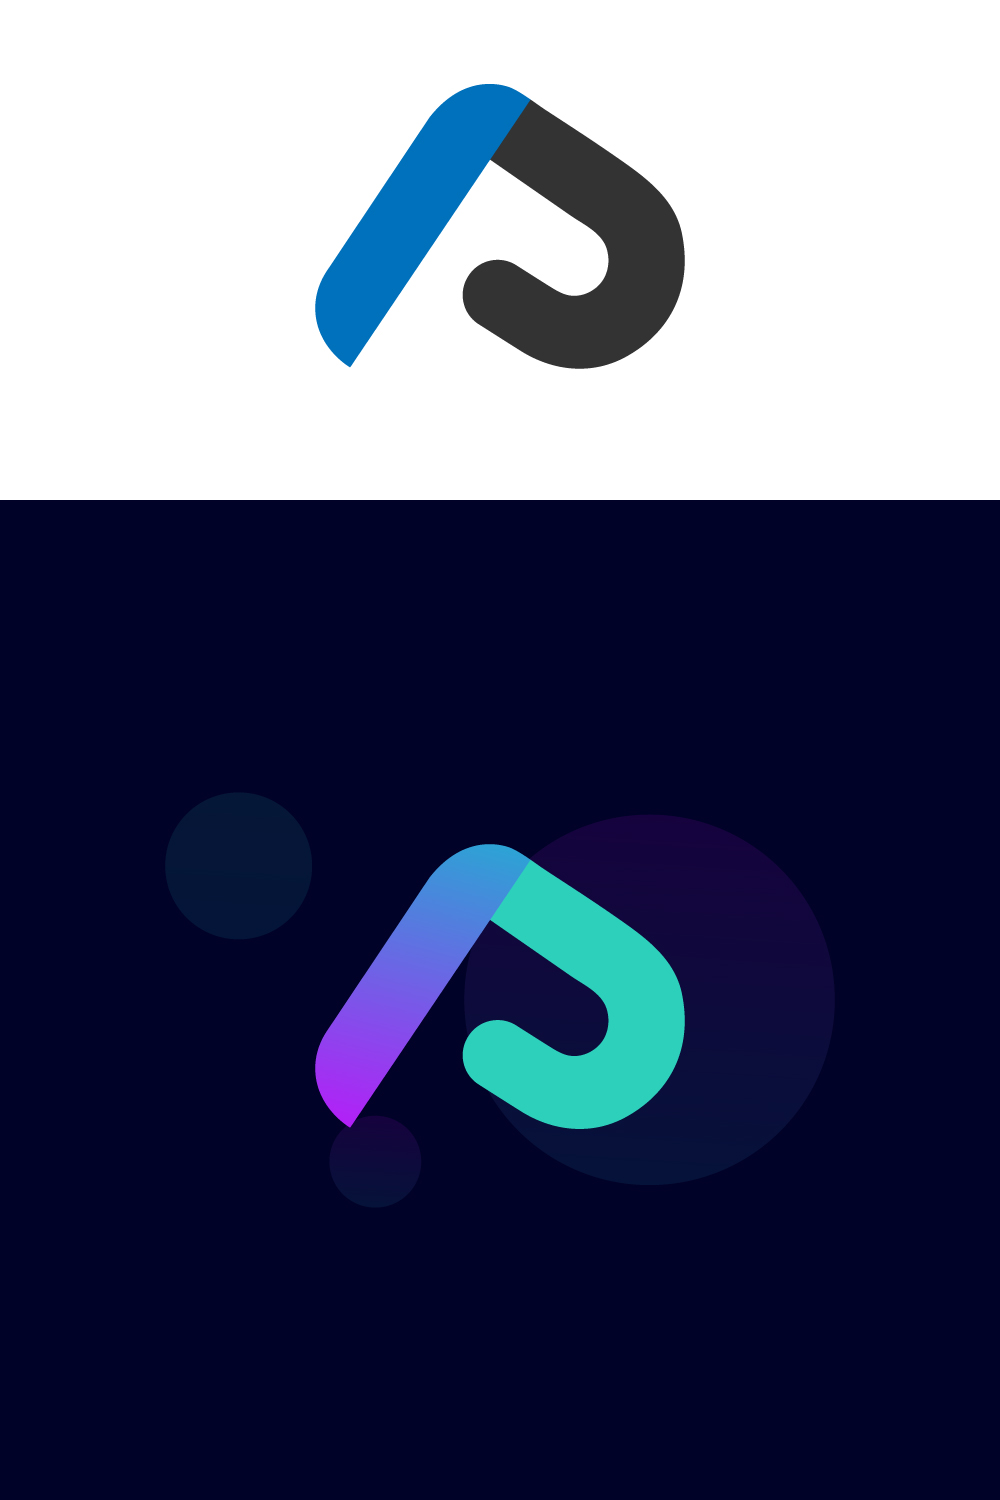 P Letter Logo Design pinterest image.